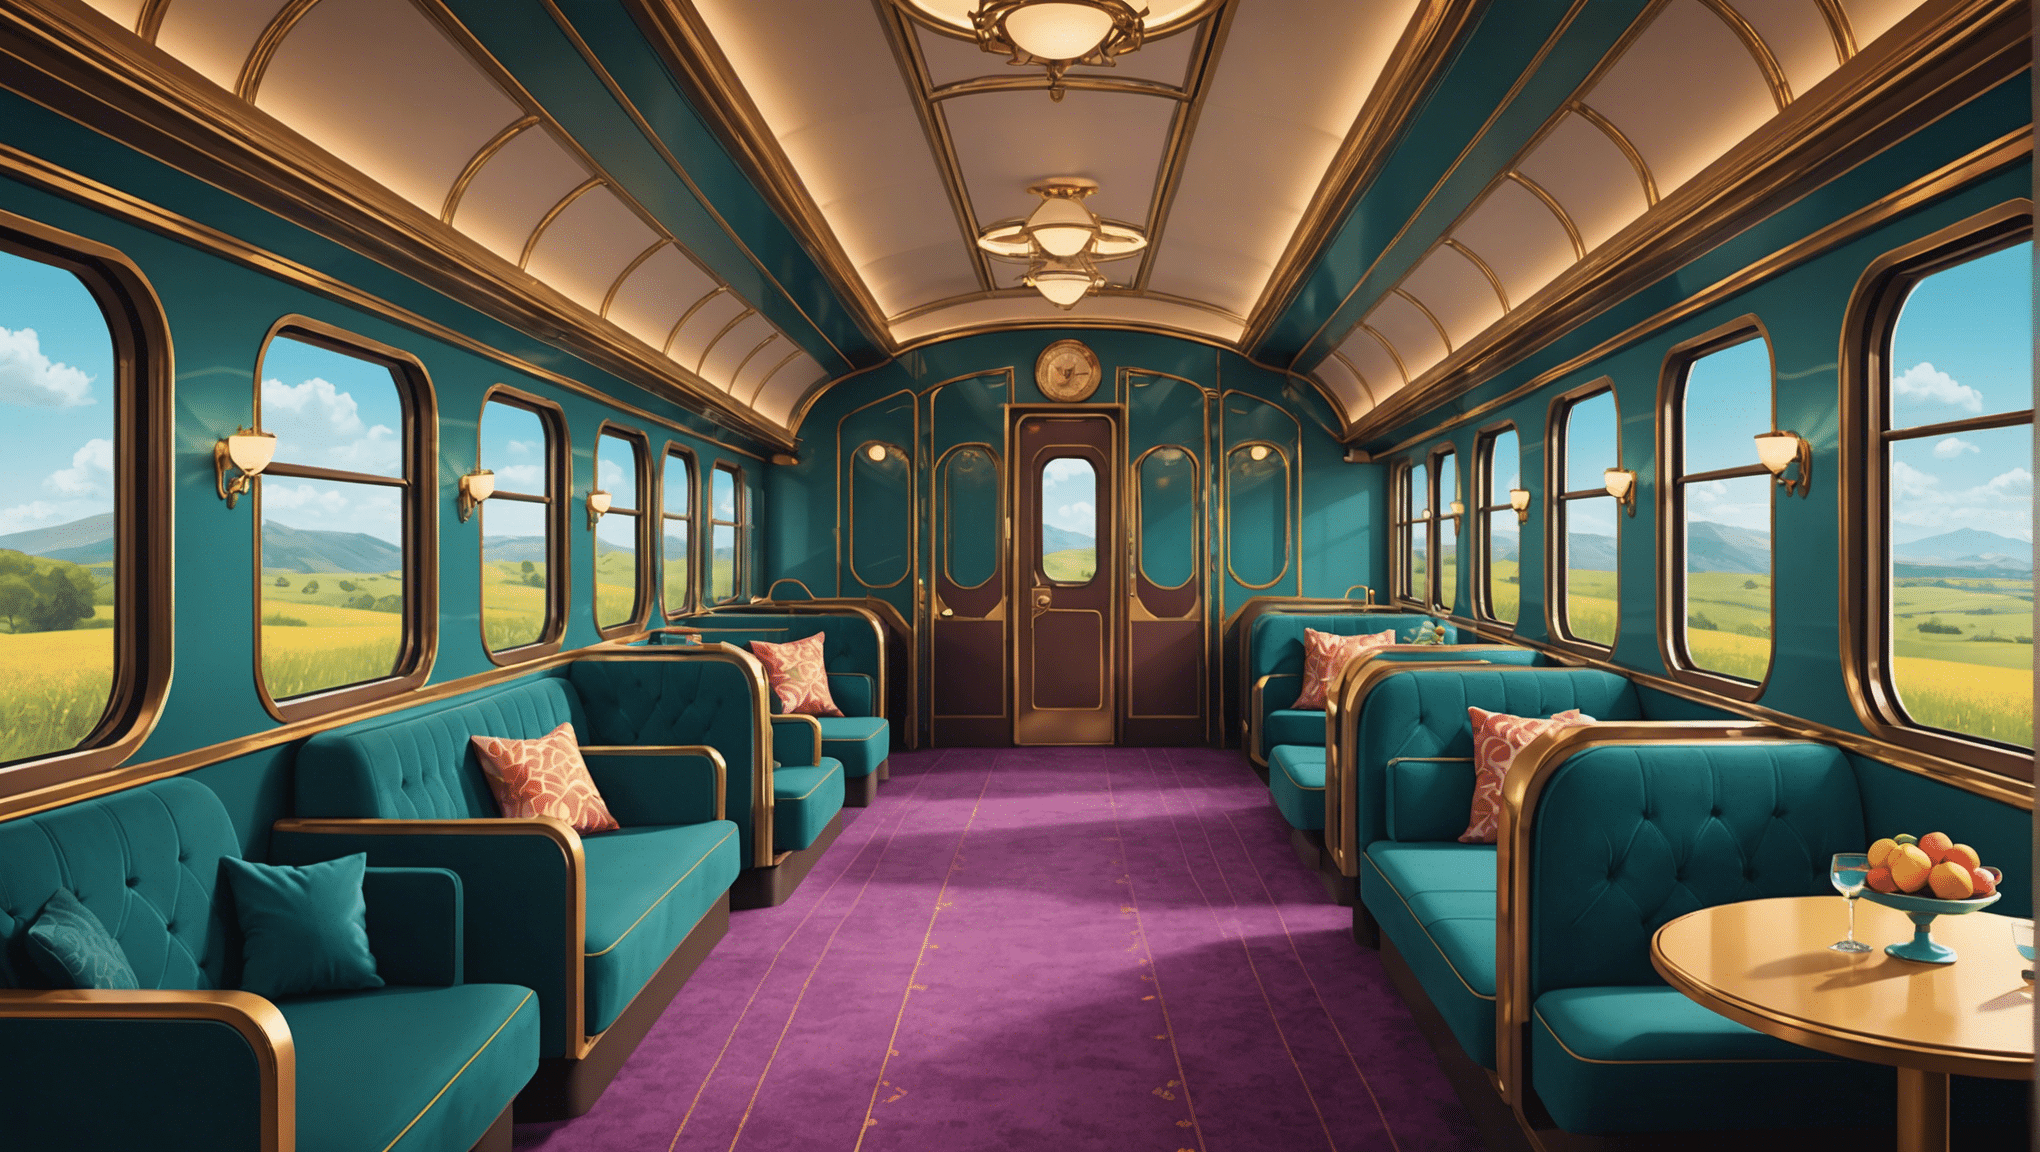 स्थायी यादों के लिए, शानदार सेटिंग में लक्जरी ट्रेन यात्रा के अविस्मरणीय अनुभव की खोज करें।